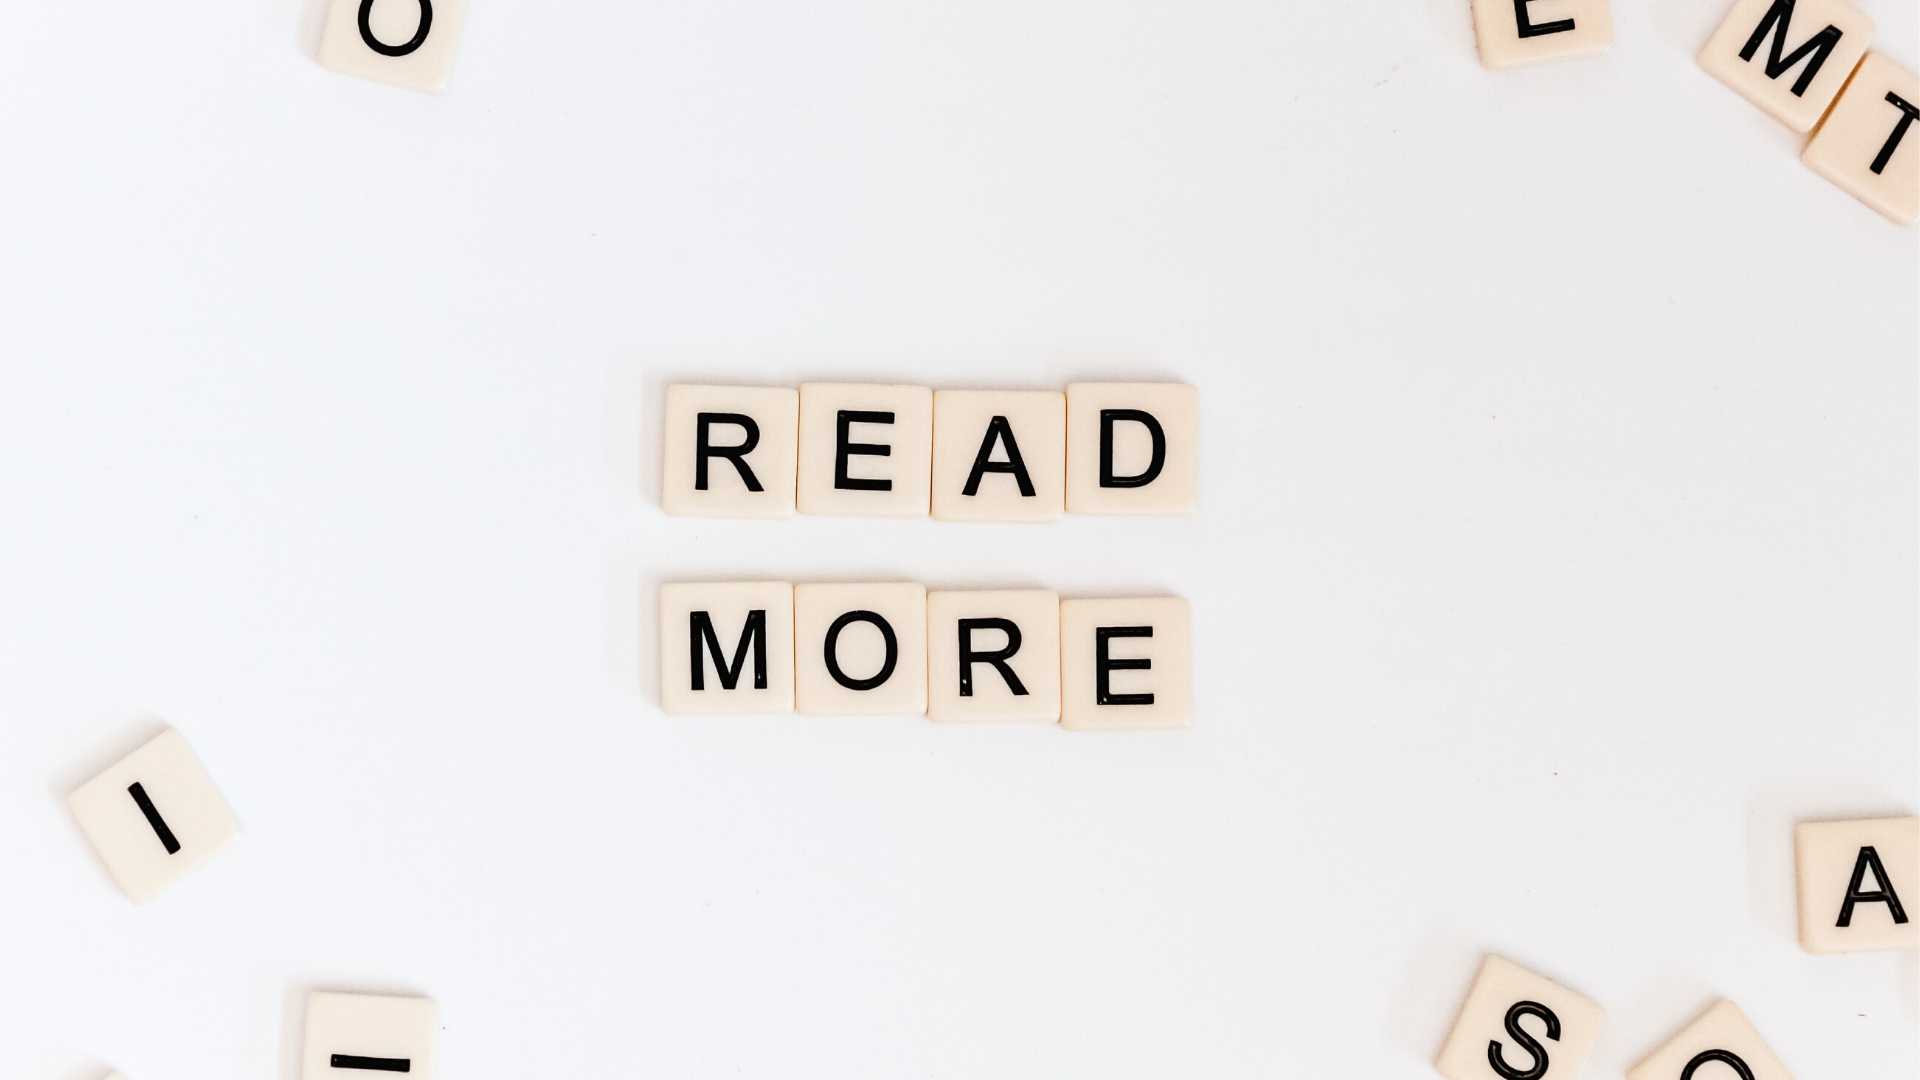 Lettres de Scrabble préconisant de "lire plus" pour apprendre l'anglais